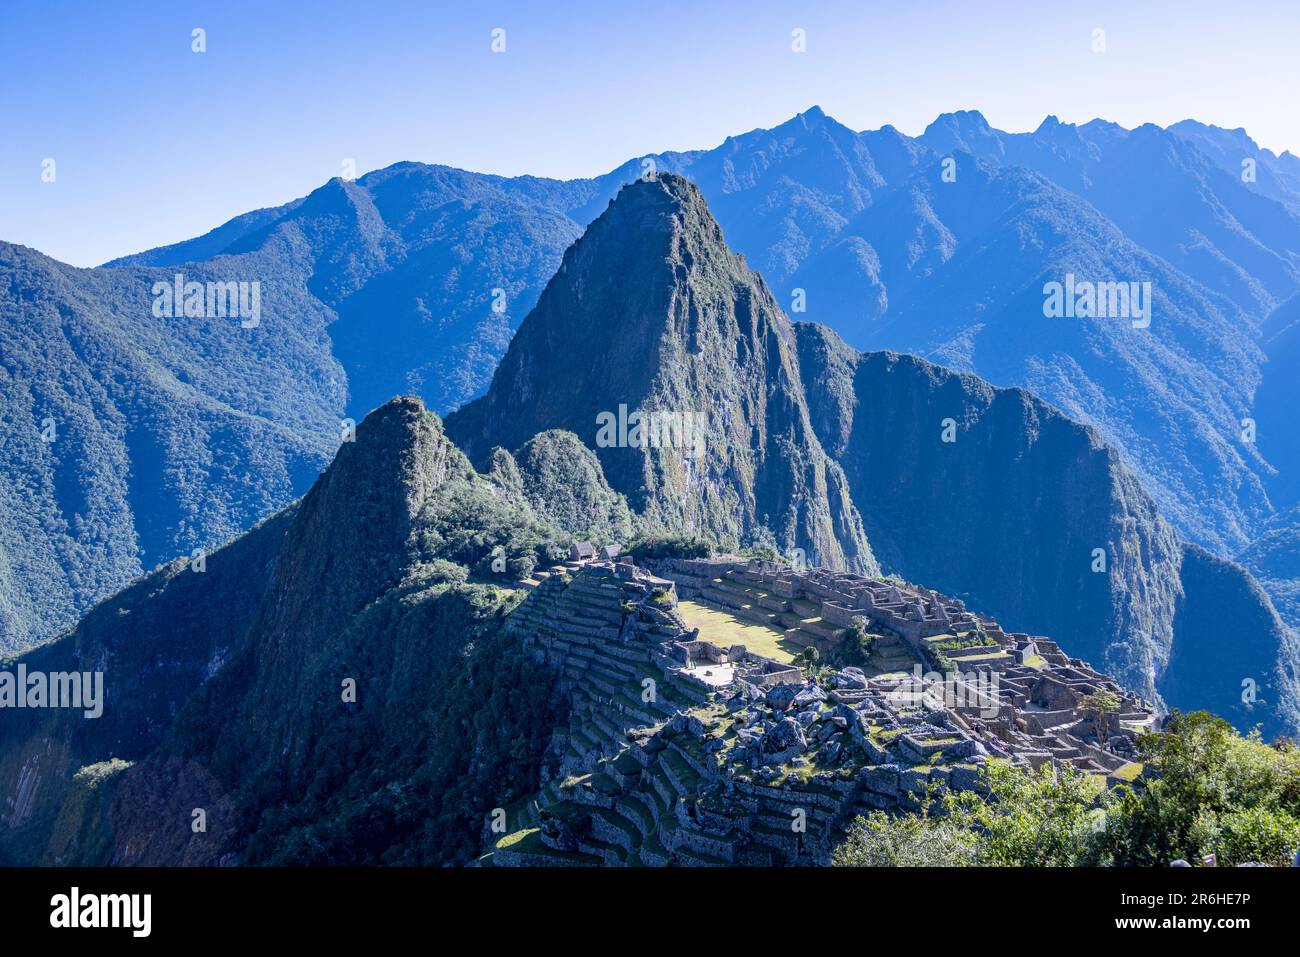 Inca ruins of Machu Picchu, Peru, South America Stock Photo